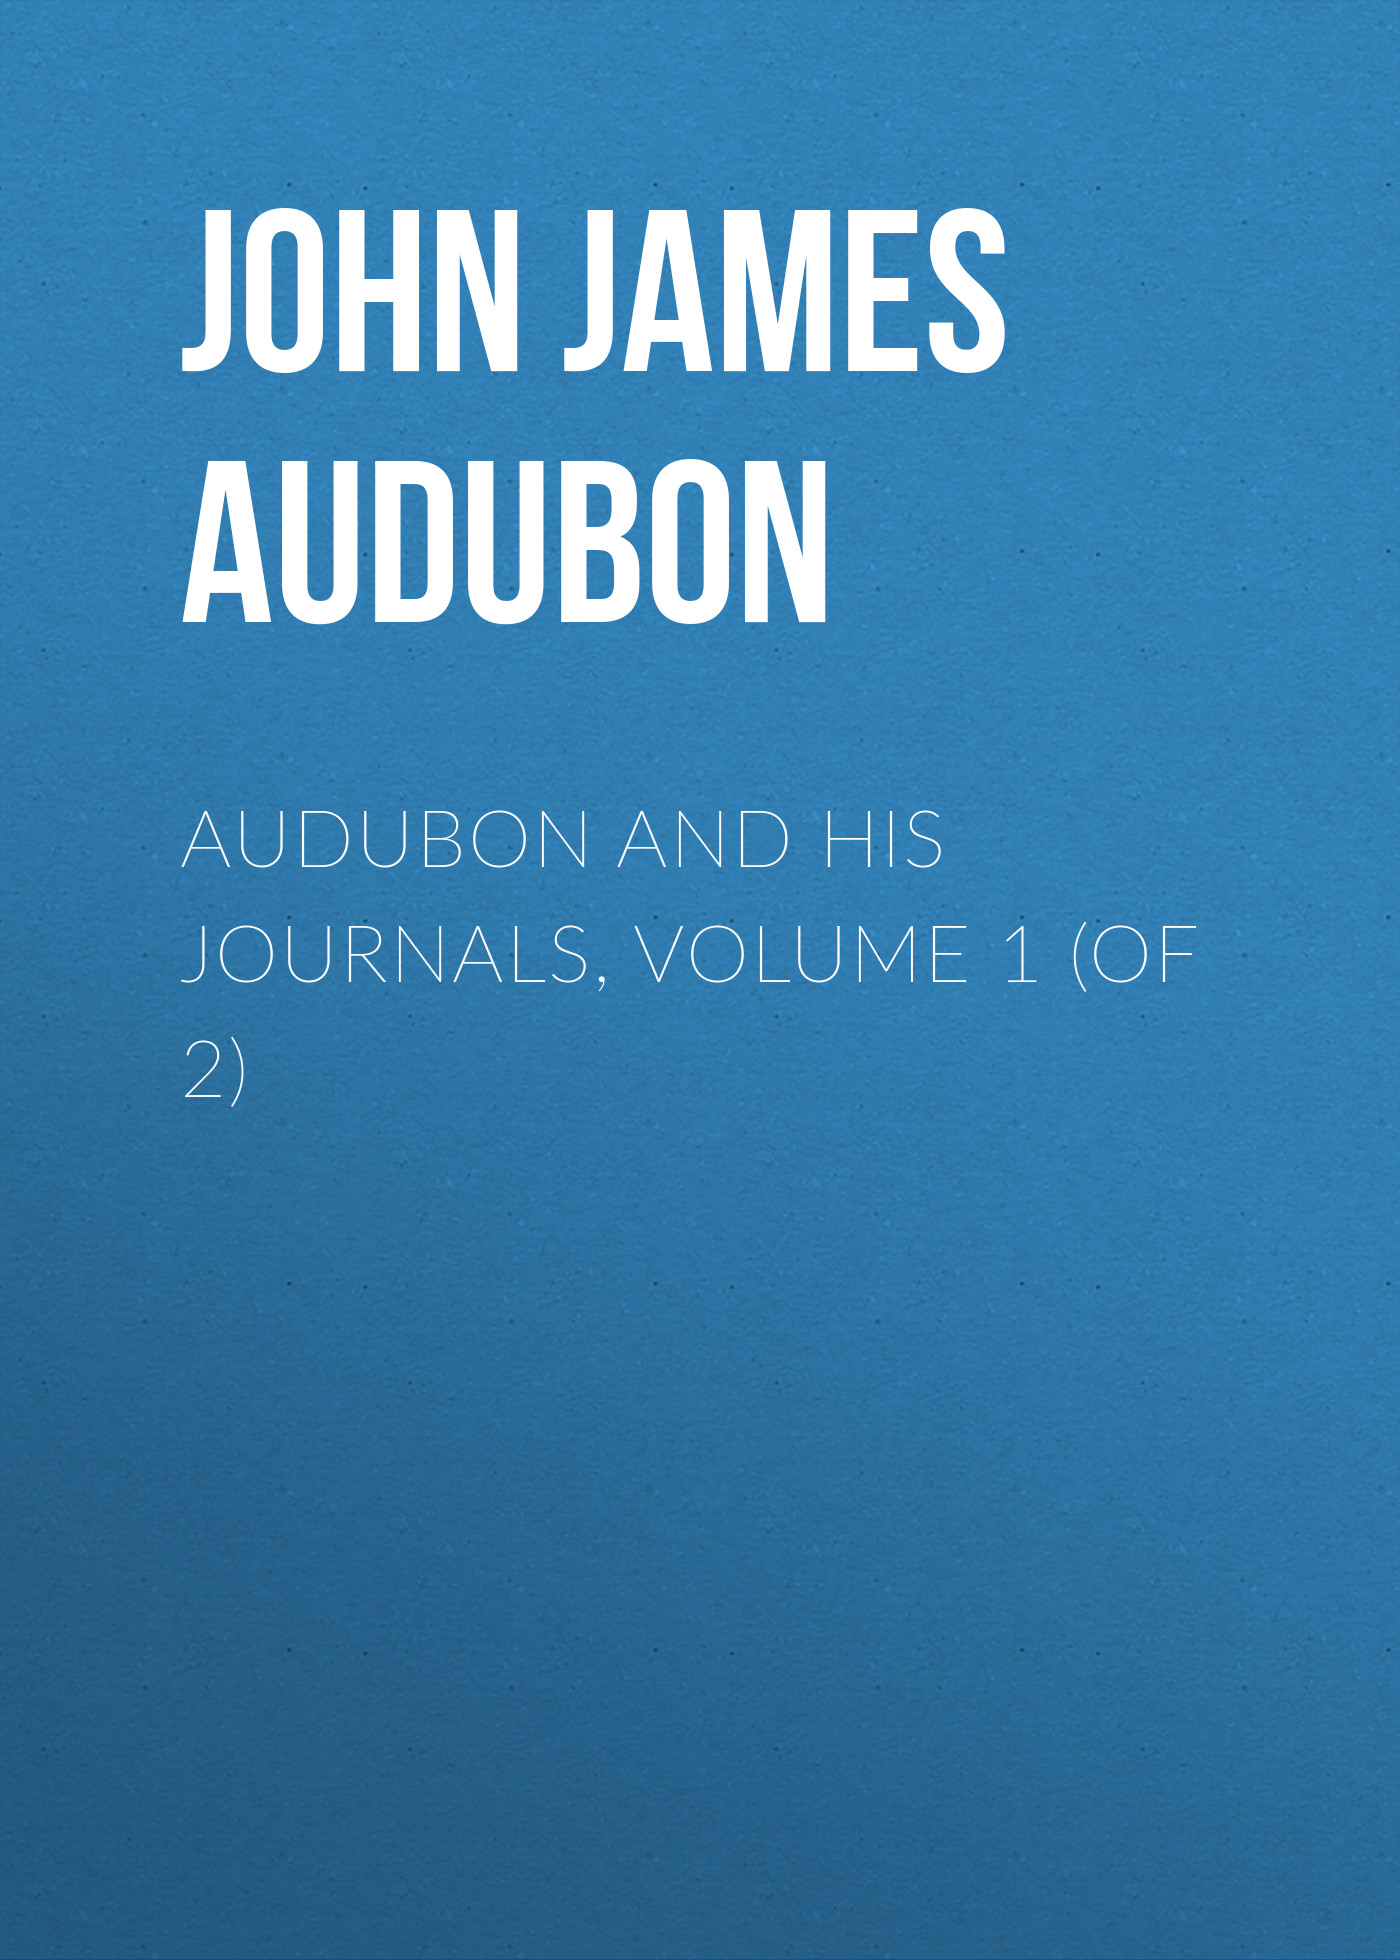 Книга Audubon and his Journals, Volume 1 (of 2) из серии , созданная John Audubon, может относится к жанру Зарубежная старинная литература, Зарубежная классика. Стоимость электронной книги Audubon and his Journals, Volume 1 (of 2) с идентификатором 24167188 составляет 0.90 руб.